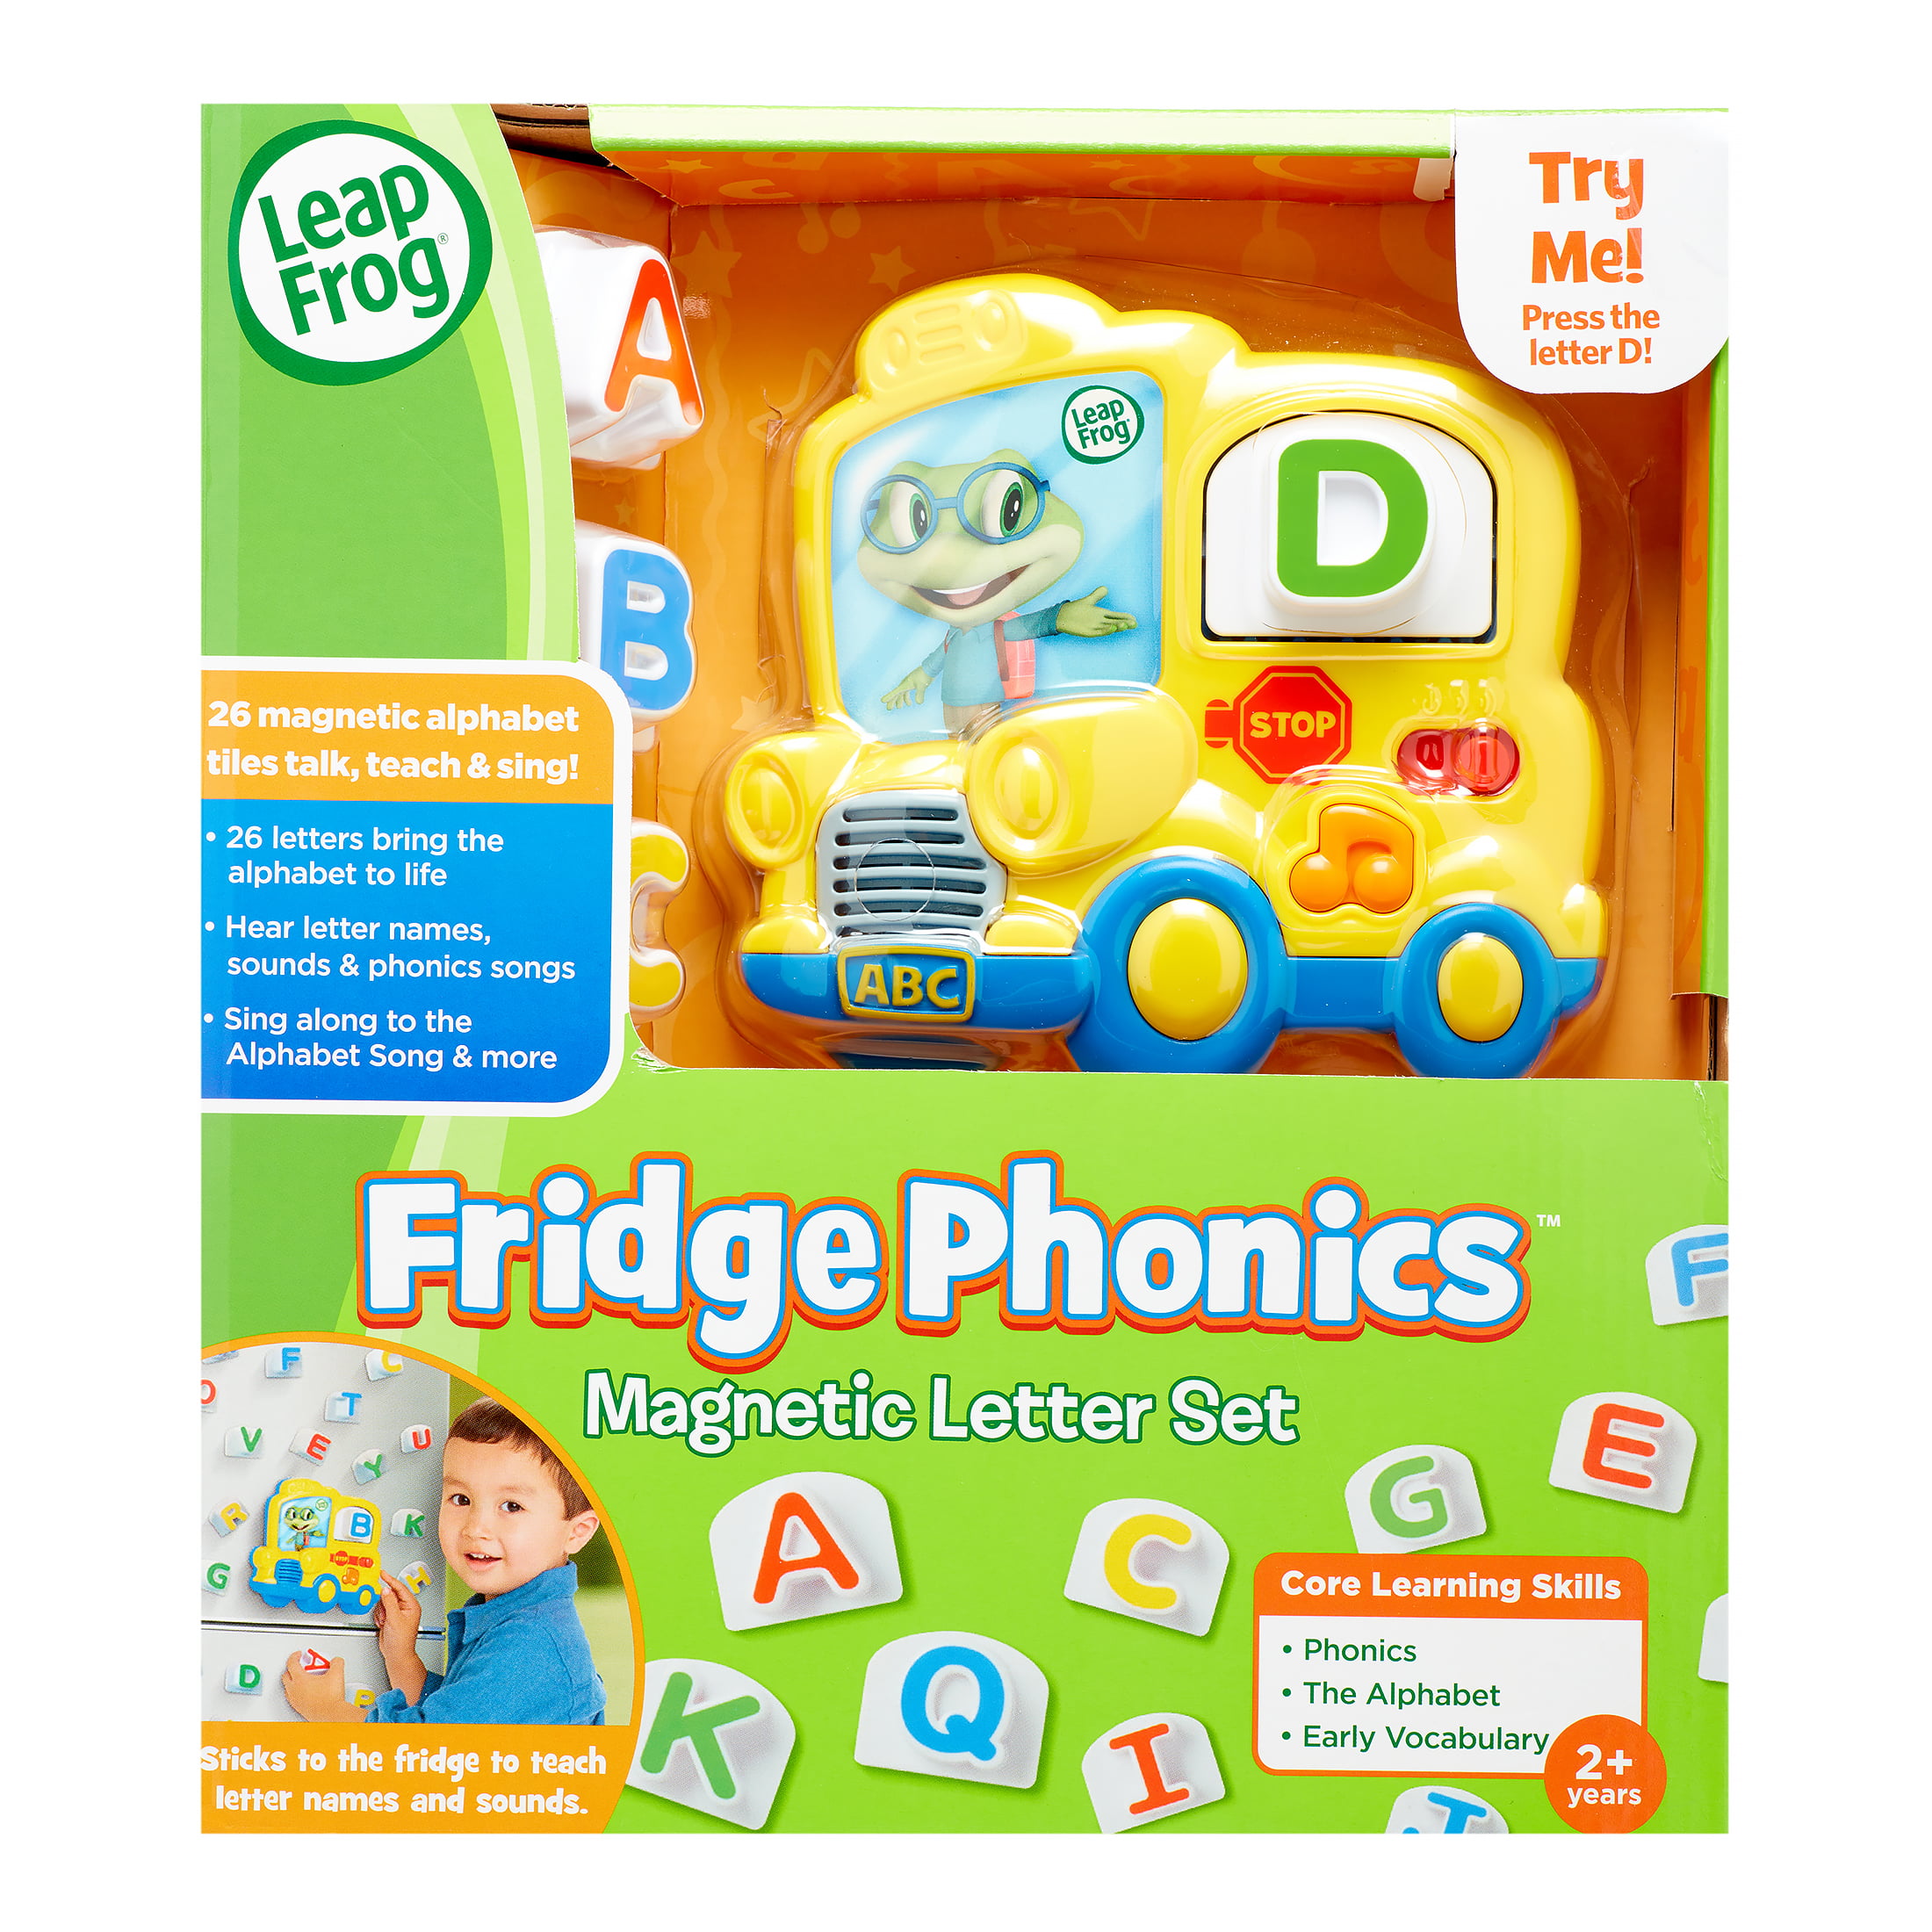 LEAPFROG Preschool Learning FRIDGE PHONICS Magnetic Letter Set-COMPLETE 